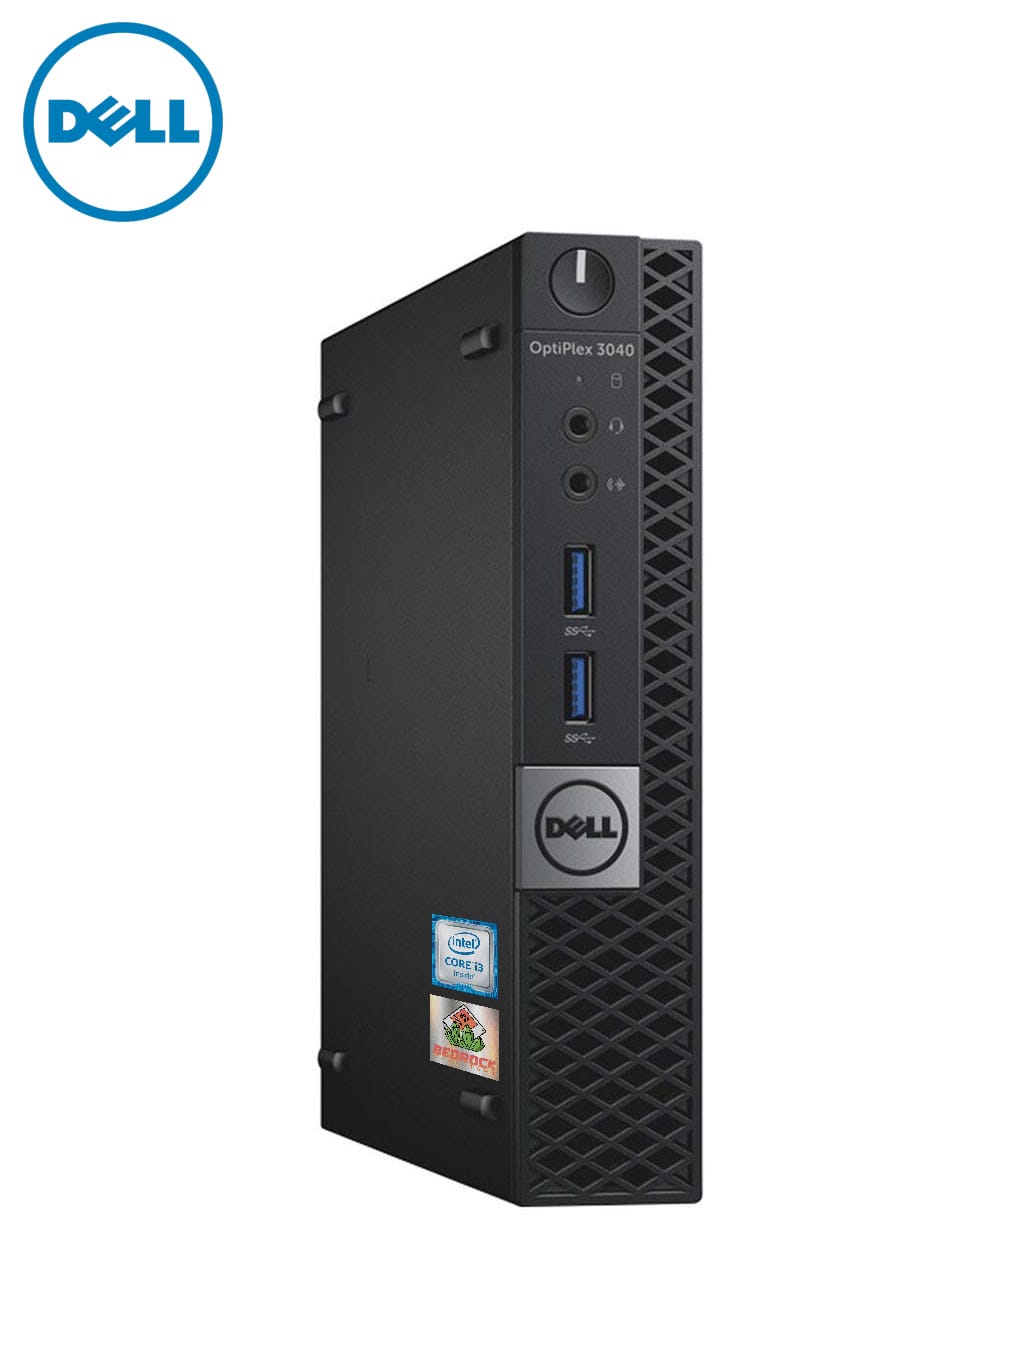 Dell Optiplex 3060 USFF – i5 8500 6 Core, 16GB RAM, 240GB SSD, Wi-Fi, Windows